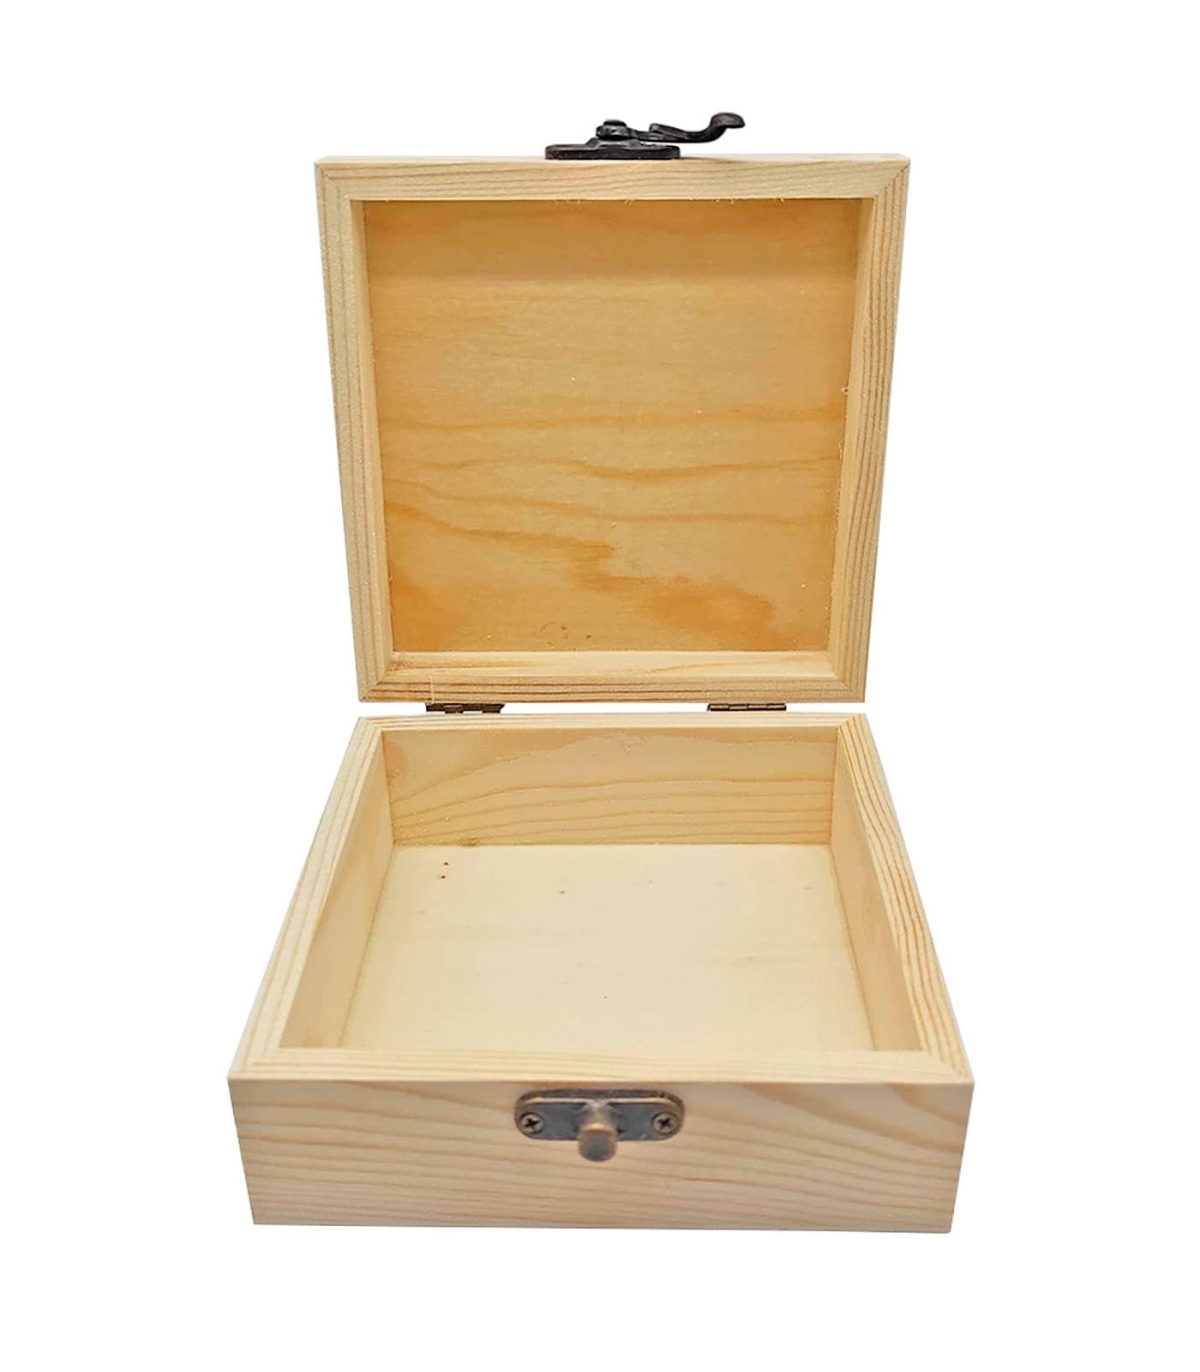 Caja de madera cuadrada con cierre metálico 12 x 12 x 5,3 cm, cajita  decorativa de madera natural sin tratar para manualidades